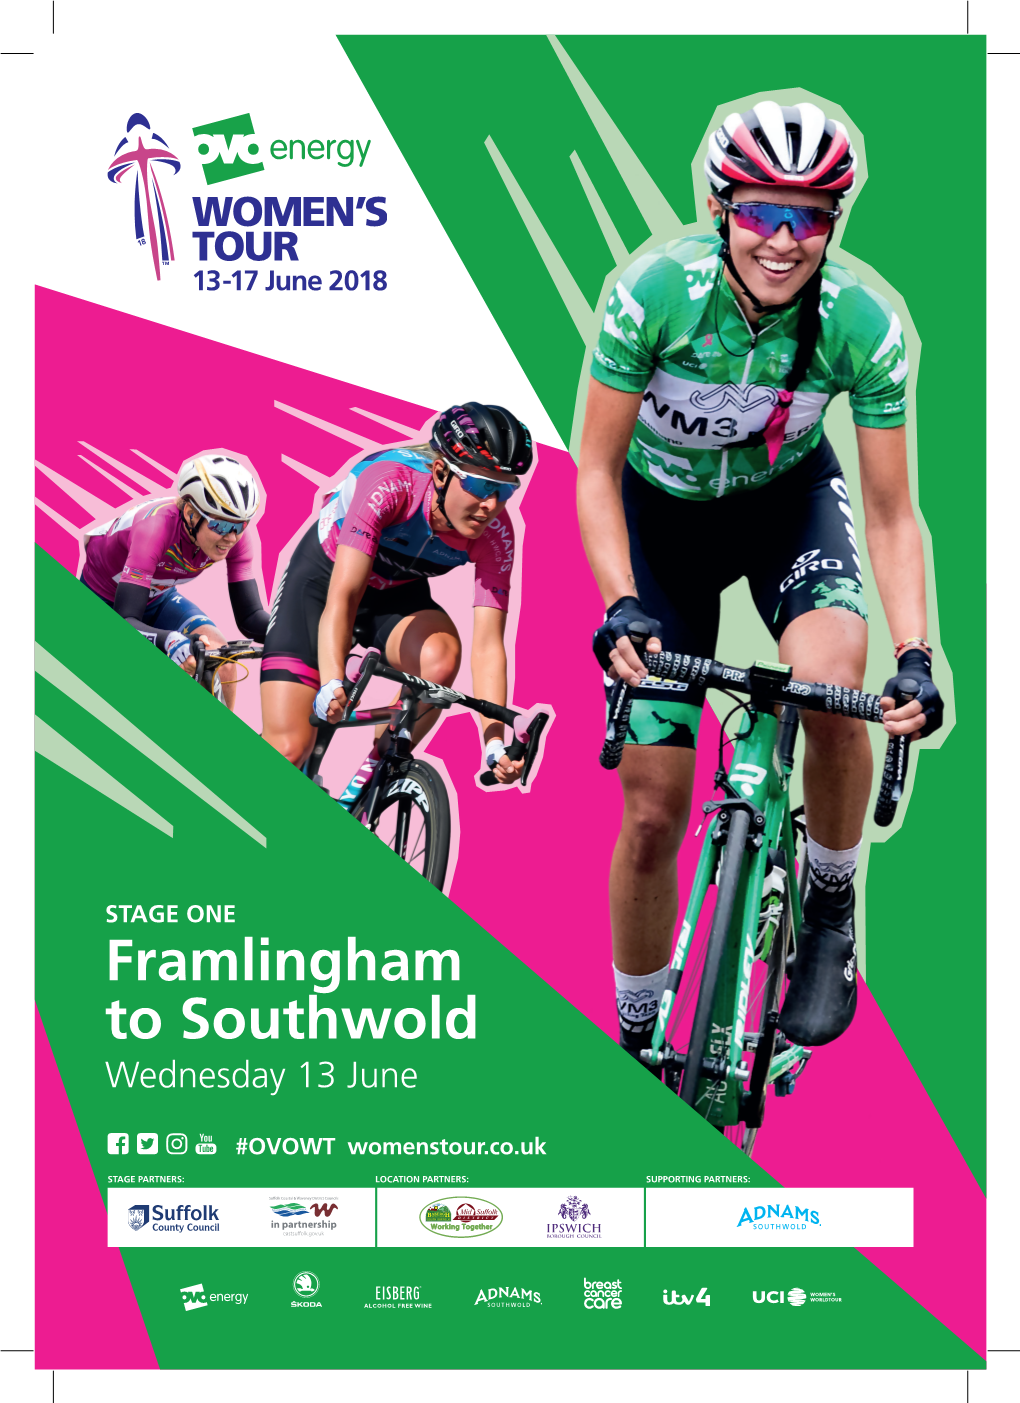 Framlingham to Southwold Wednesday 13 June